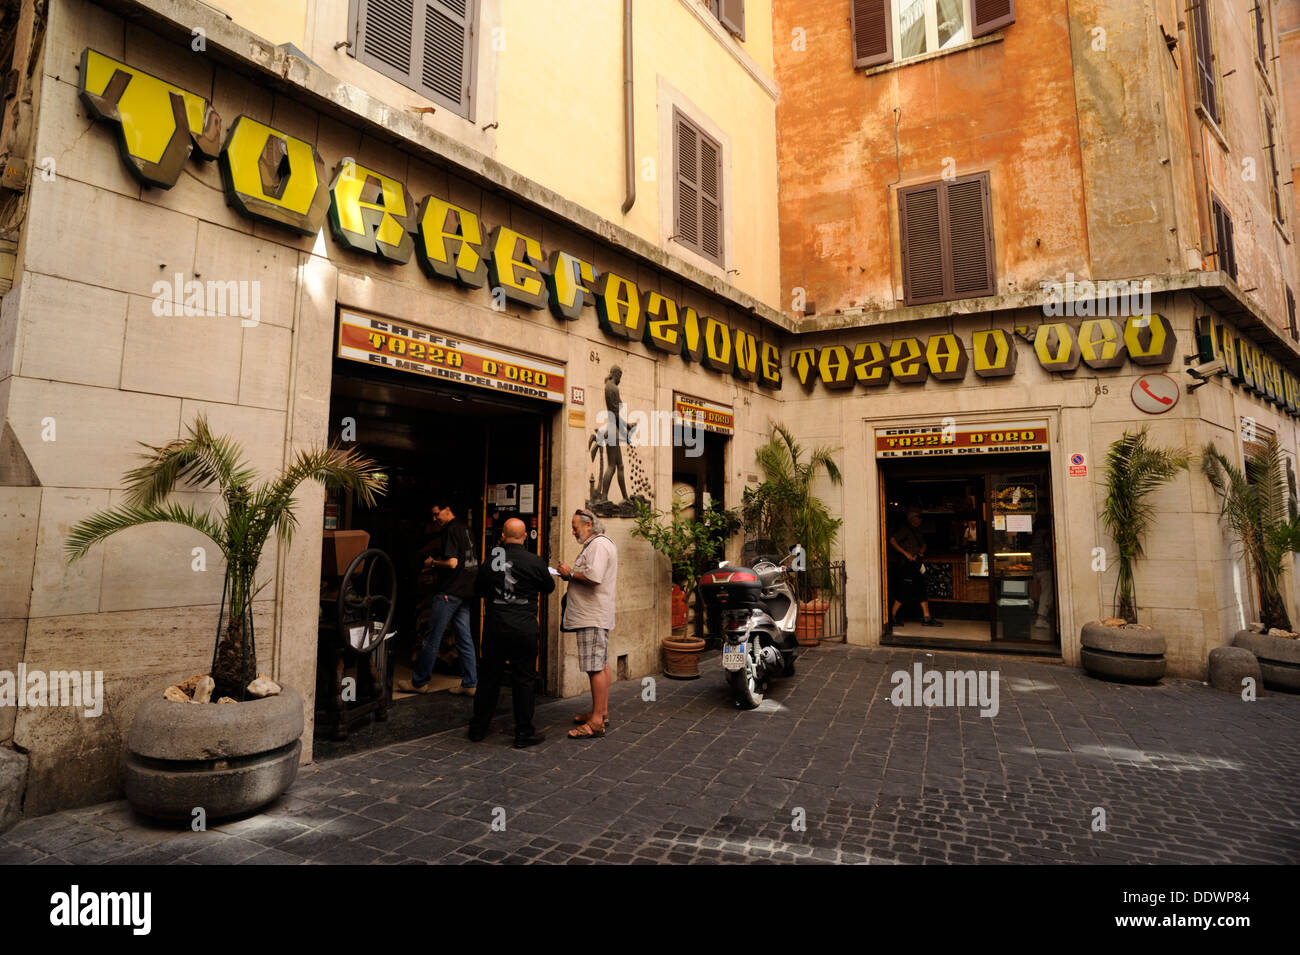 Italy, Rome, Caffè Tazza d'Oro Stock Photo - Alamy